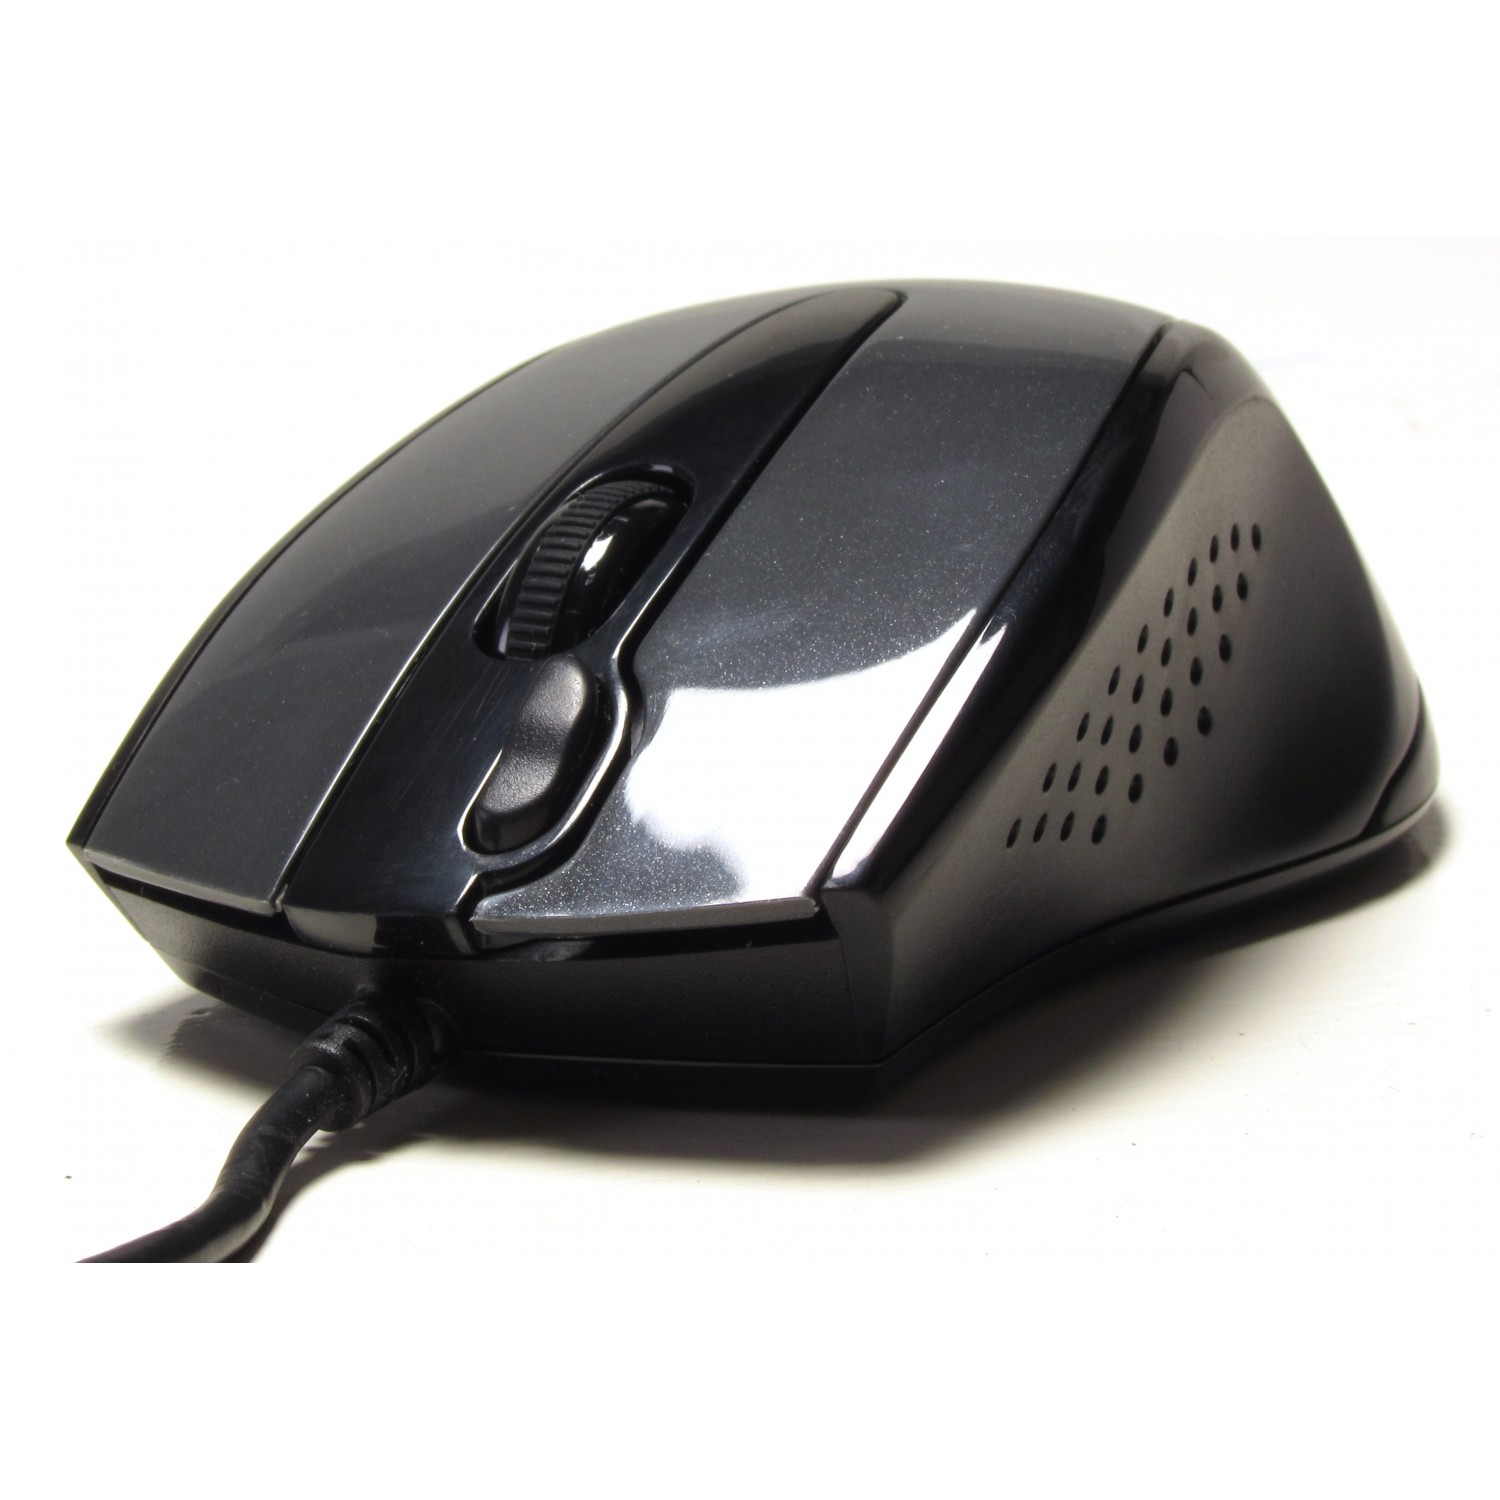 A4tech N500F Mouse-1